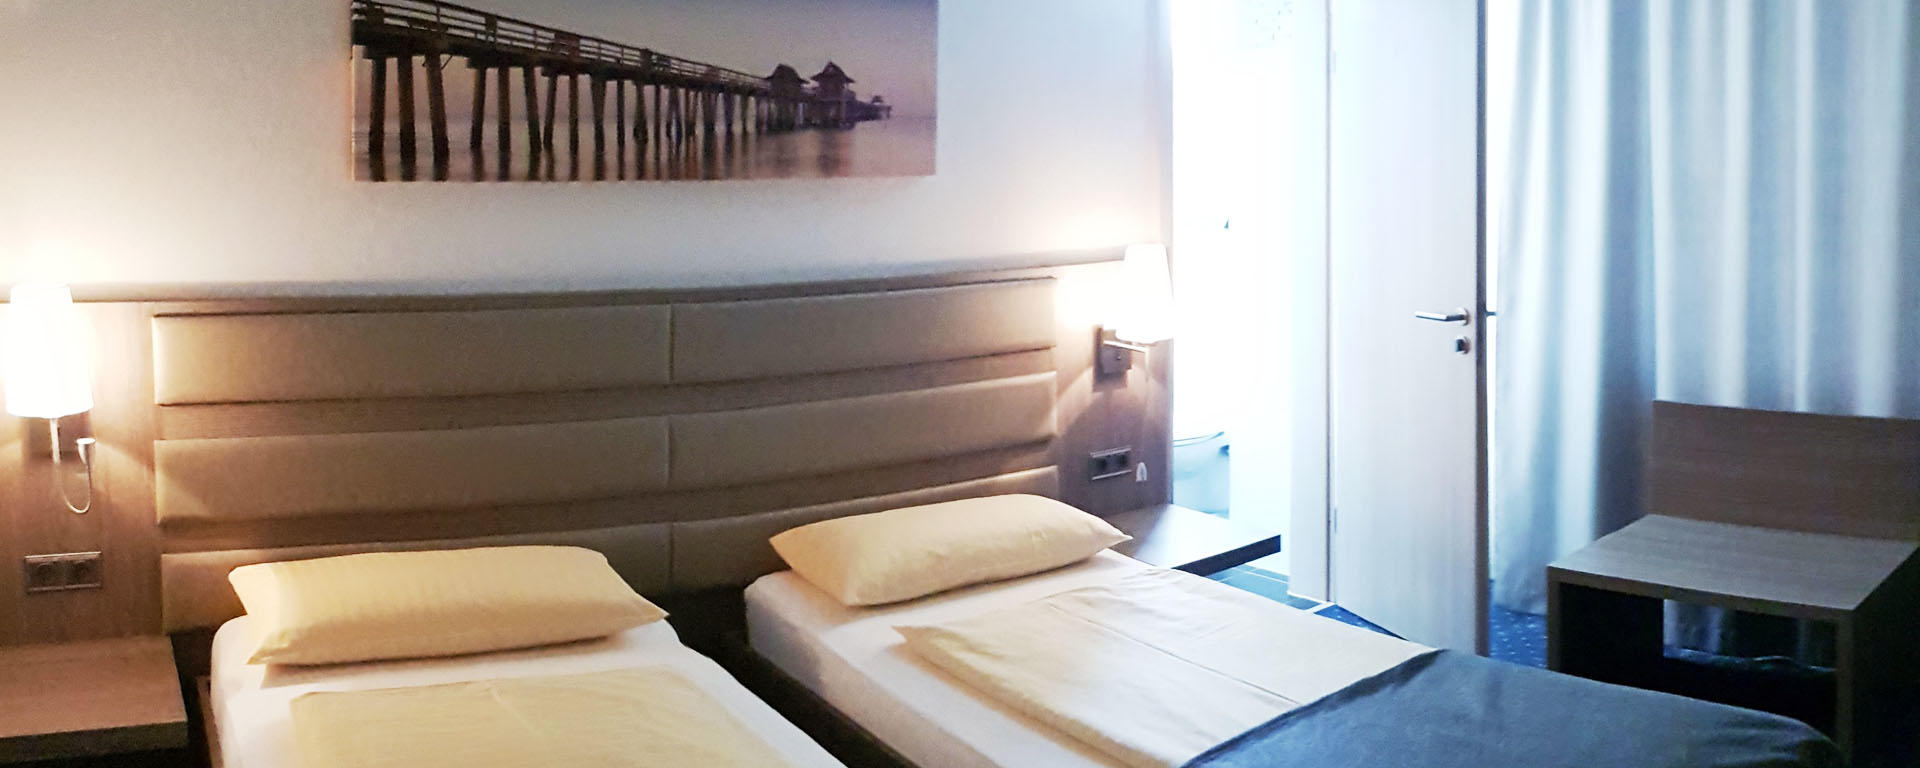 Das Hotel Drei Bären in Aichach bei Dasing/ Augsburg verfügt über 7 geräumige Doppelzimmer, jeweils ausgestattet mit einem Nassbereich mit Dusche.